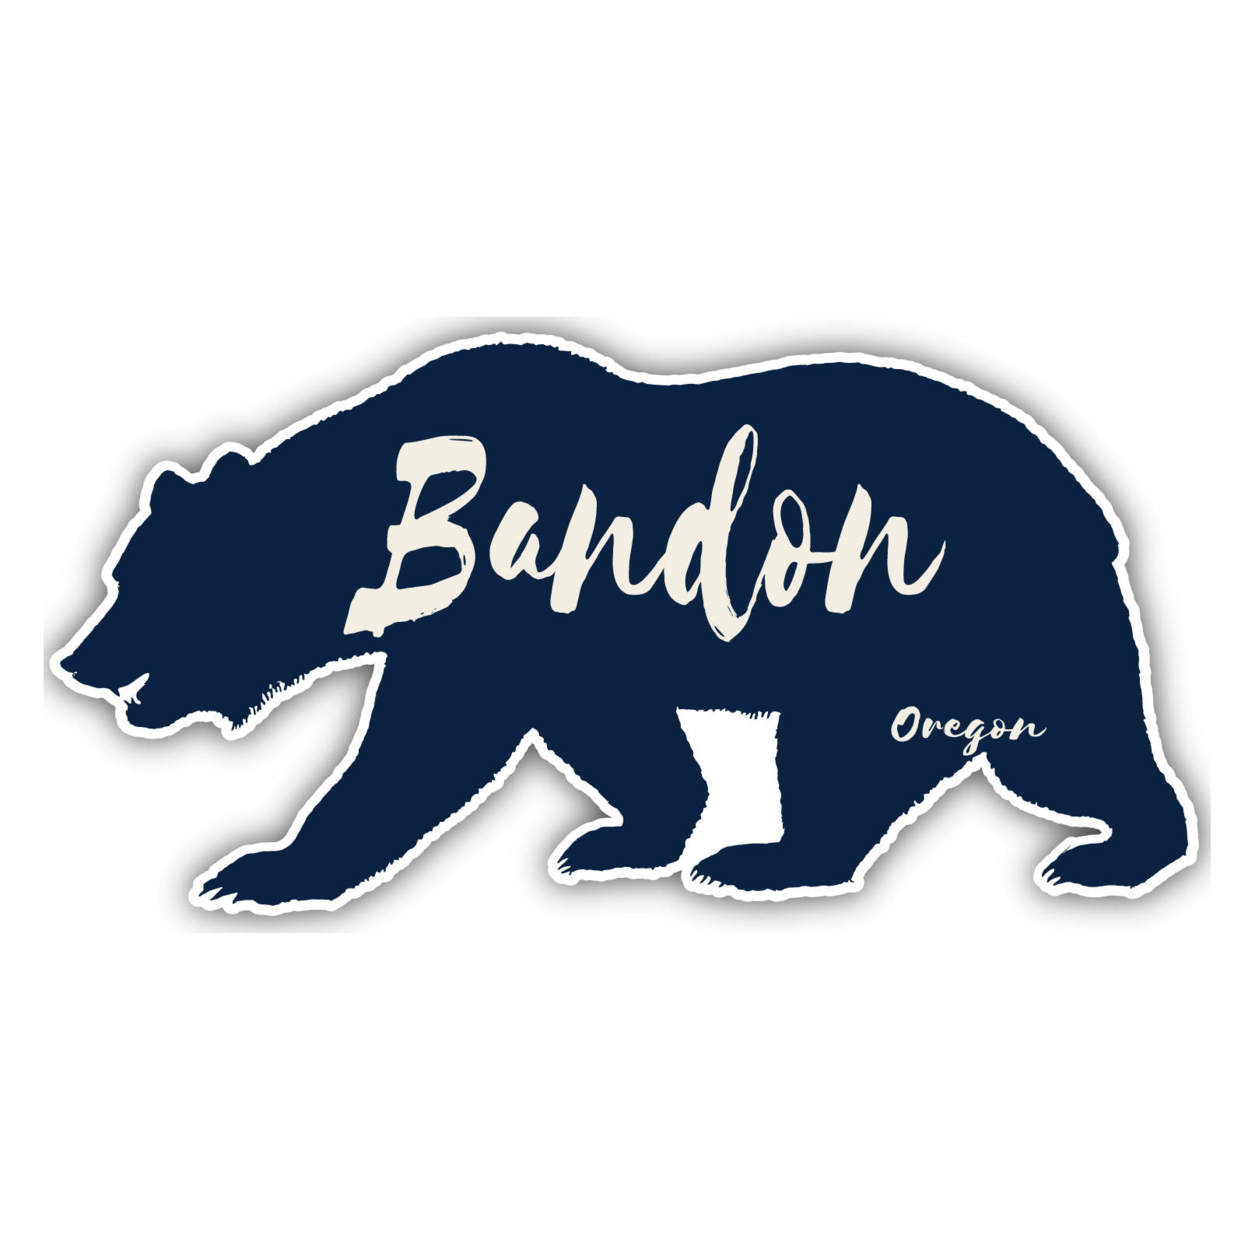 Bandon Oregon Souvenir Decorative Stickers (Choose Theme And Size) - Single Unit, 2-Inch, Tent